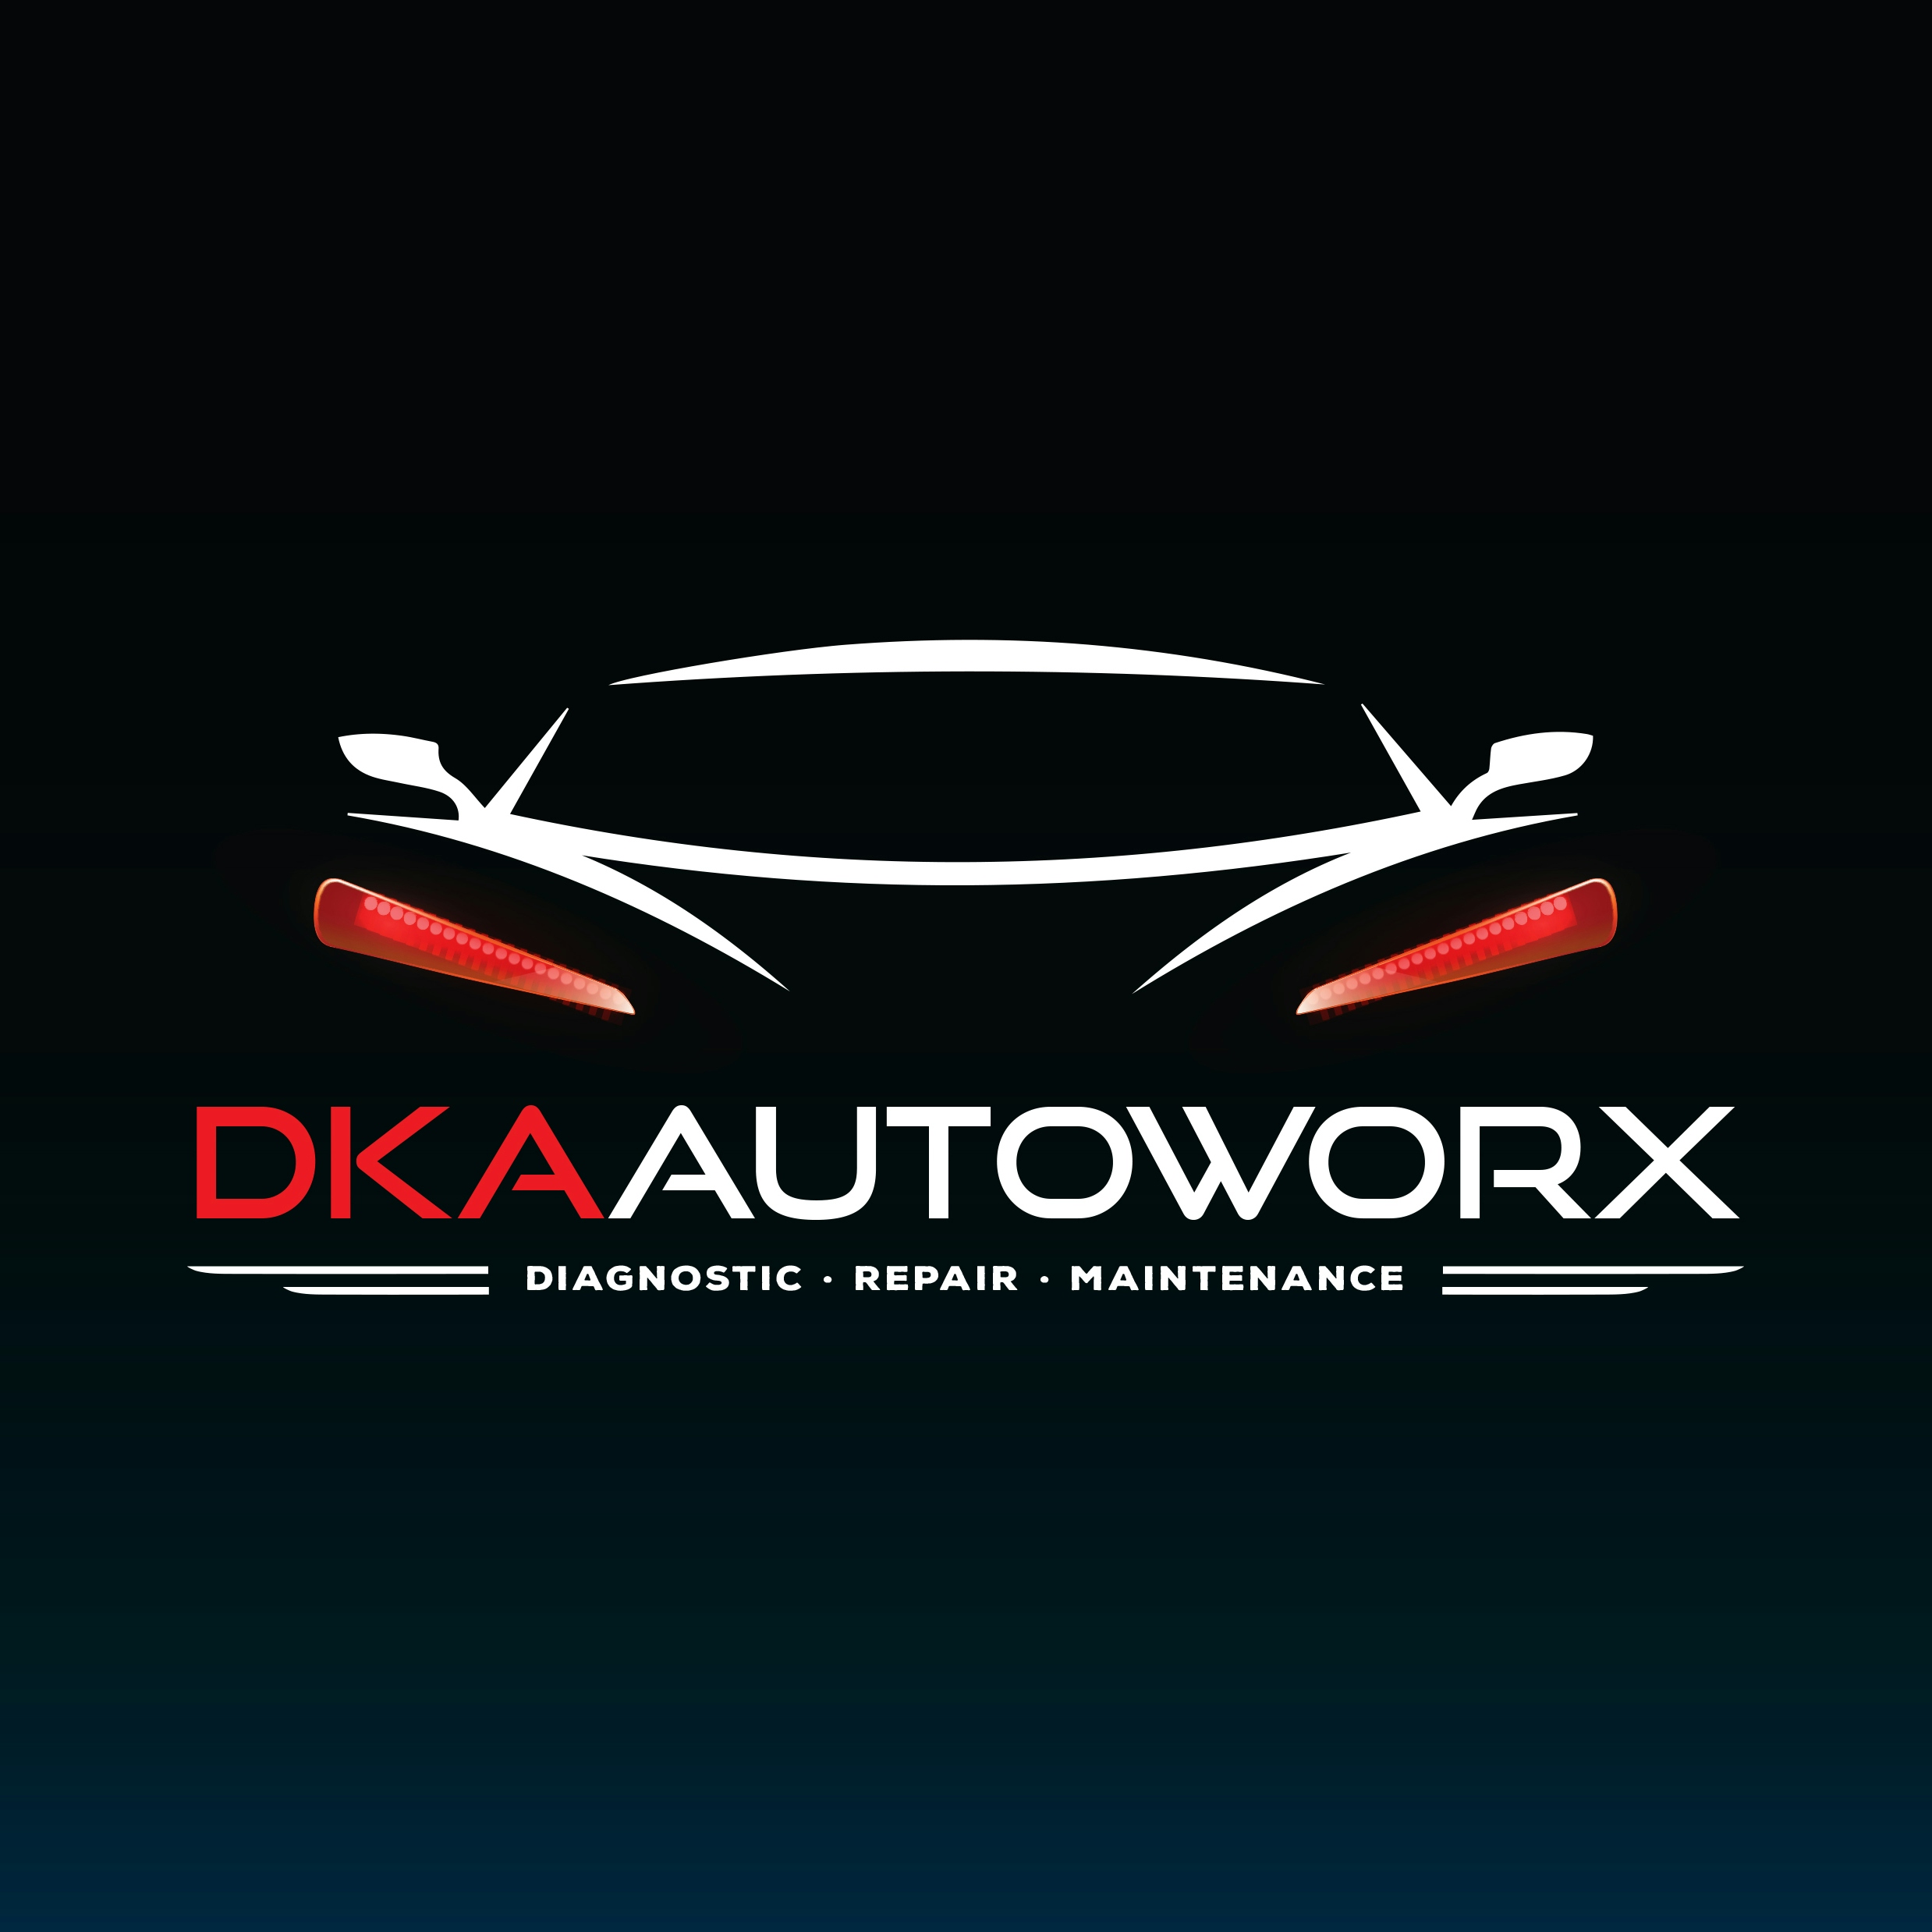 DKA Autoworx